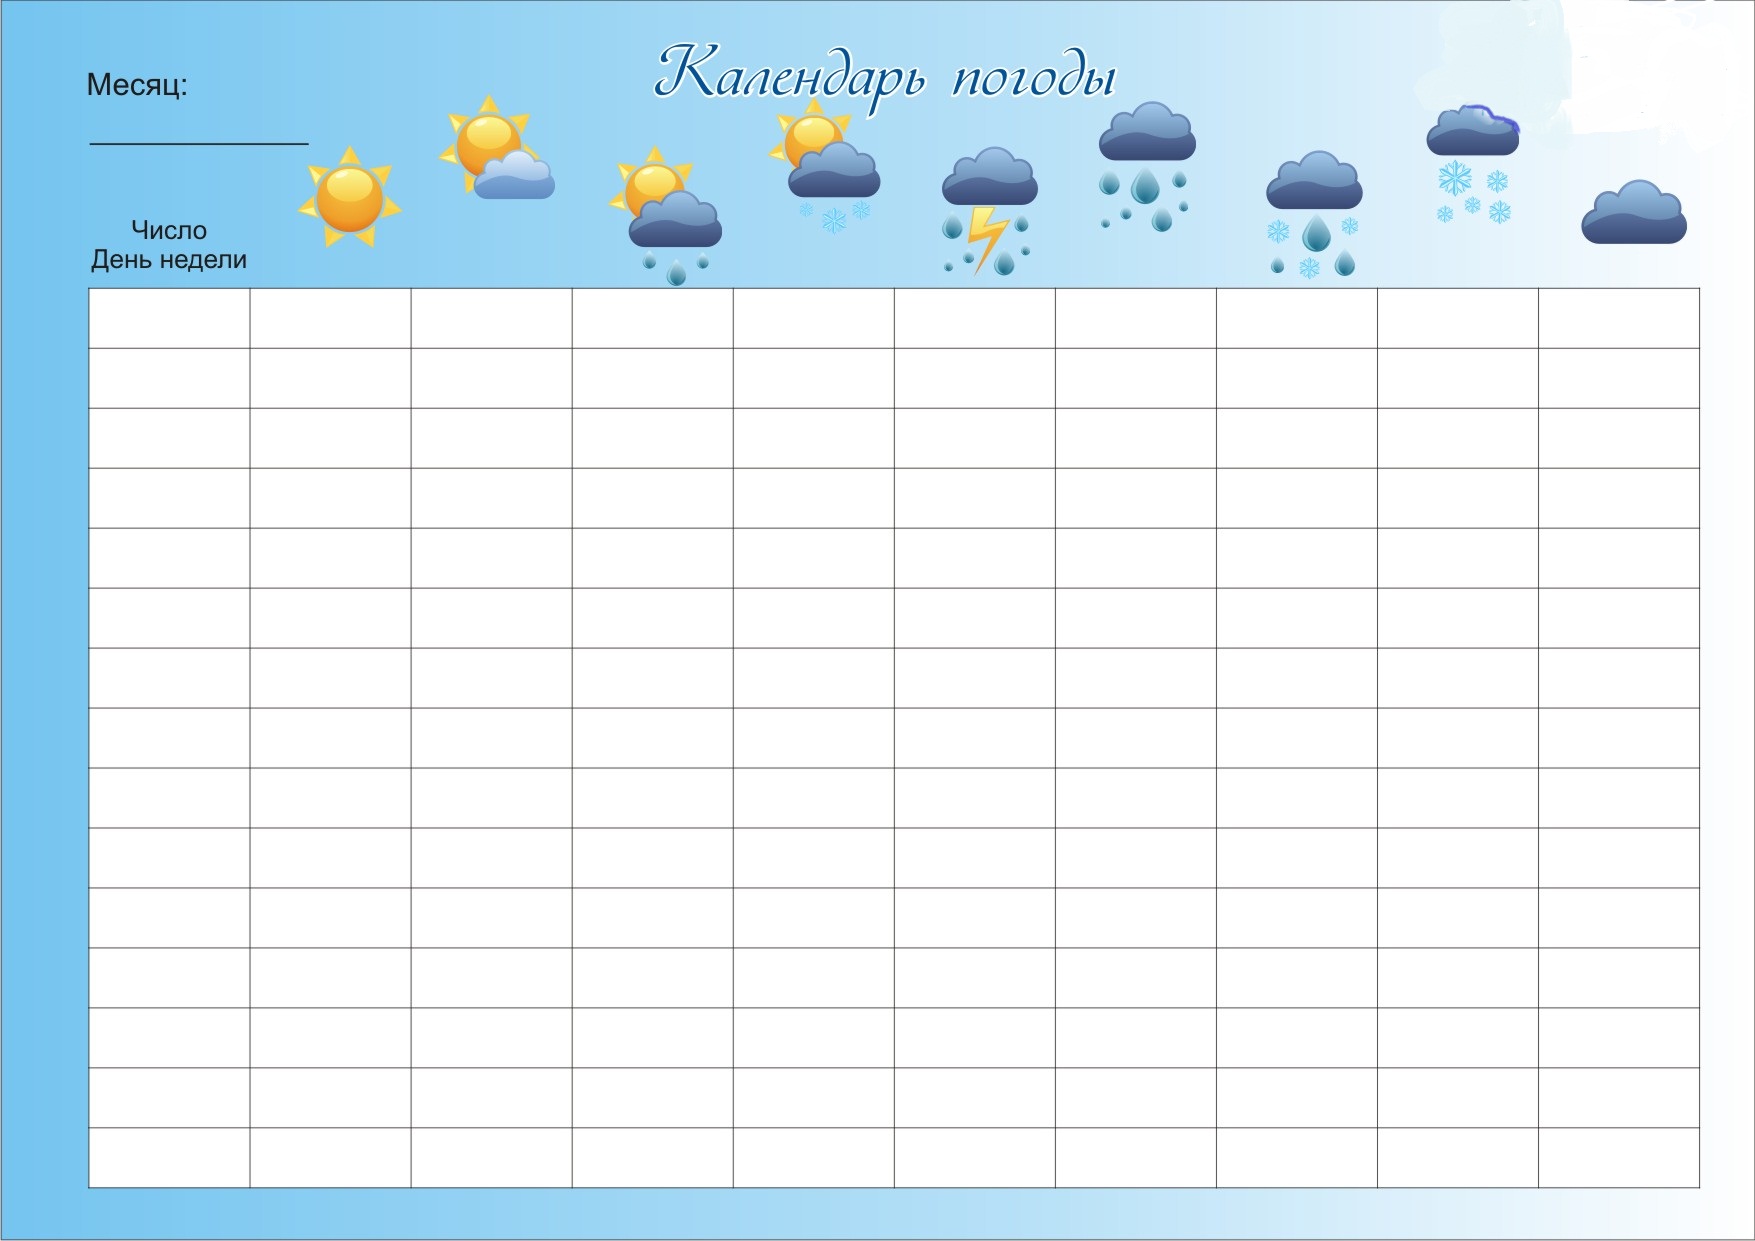 Дневник наблюдений за погодой таблица. Календарь наблюдений за погодой. Календарь погоды для детского сада. Наблюдение за погодой в детском саду. Погодный календарь для детей.